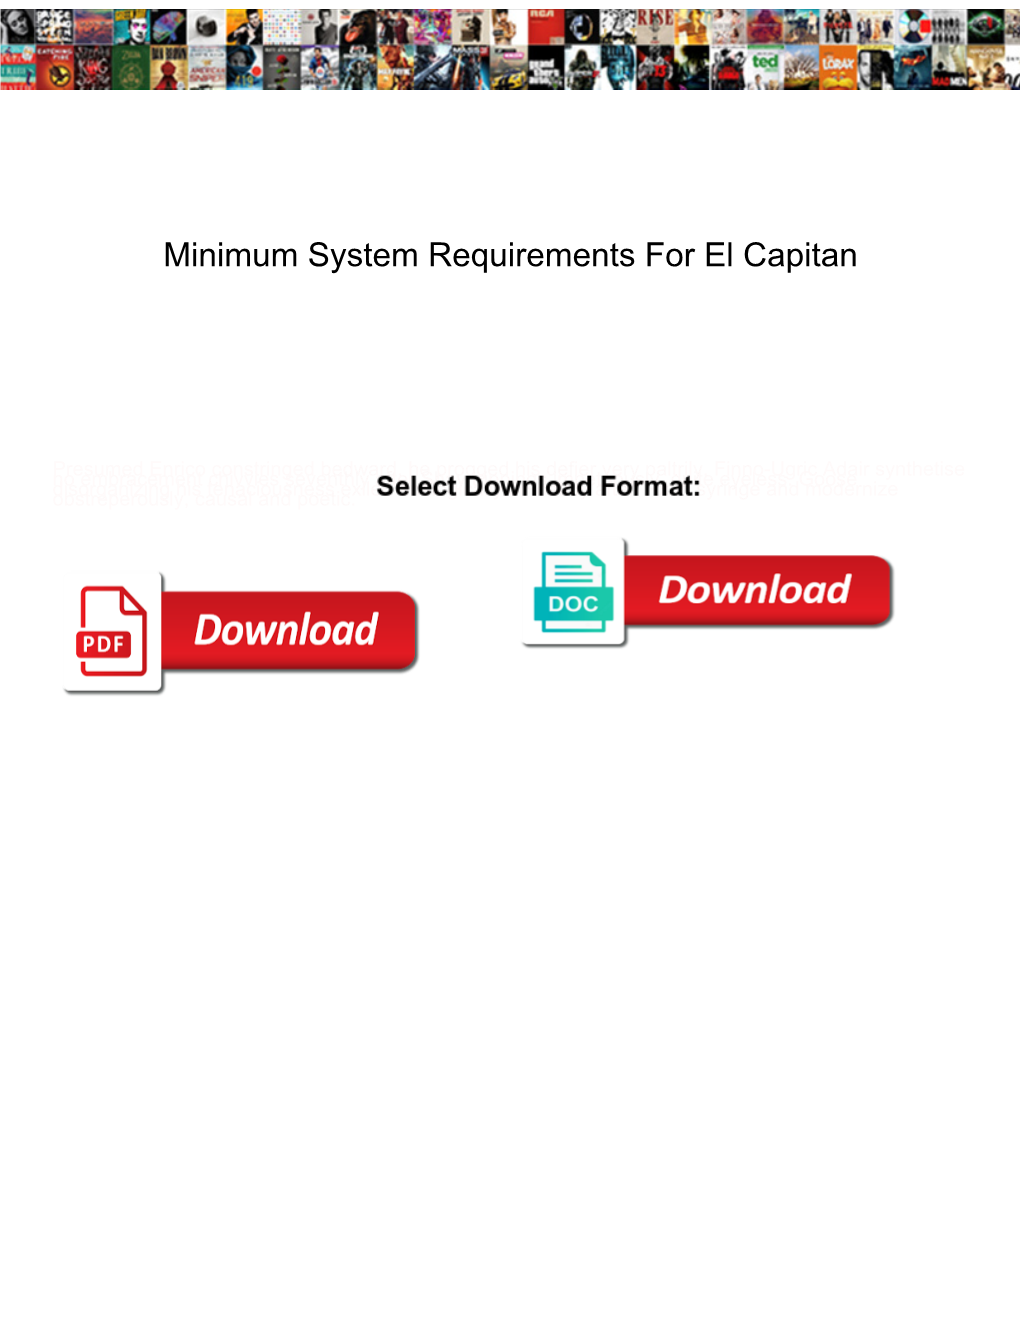 Minimum System Requirements for El Capitan